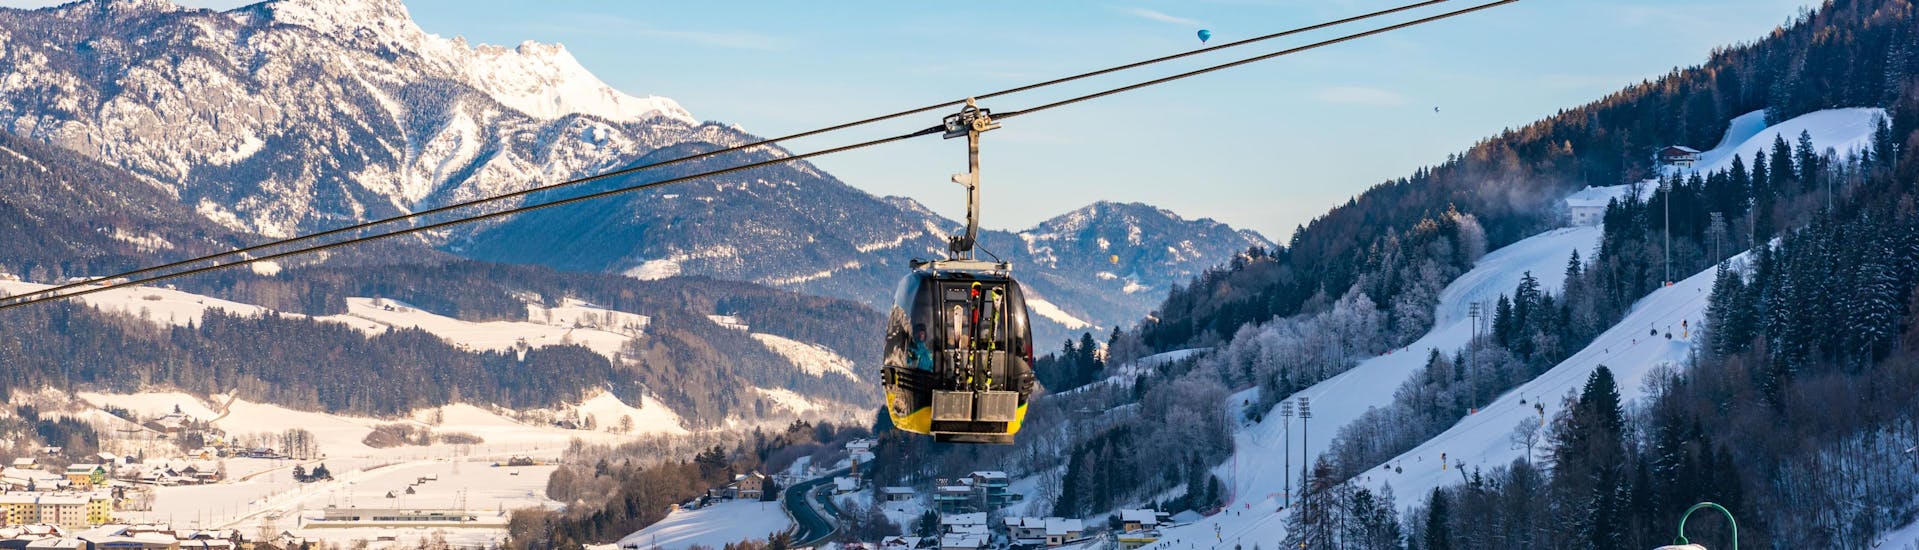 Eine Gondel hängt suspendiert über der Stadt Schladming, einem beliebten Ort für Skischulen die in der Region Ski Amadé Schladming Dachstein ihre Skikurse anbieten.